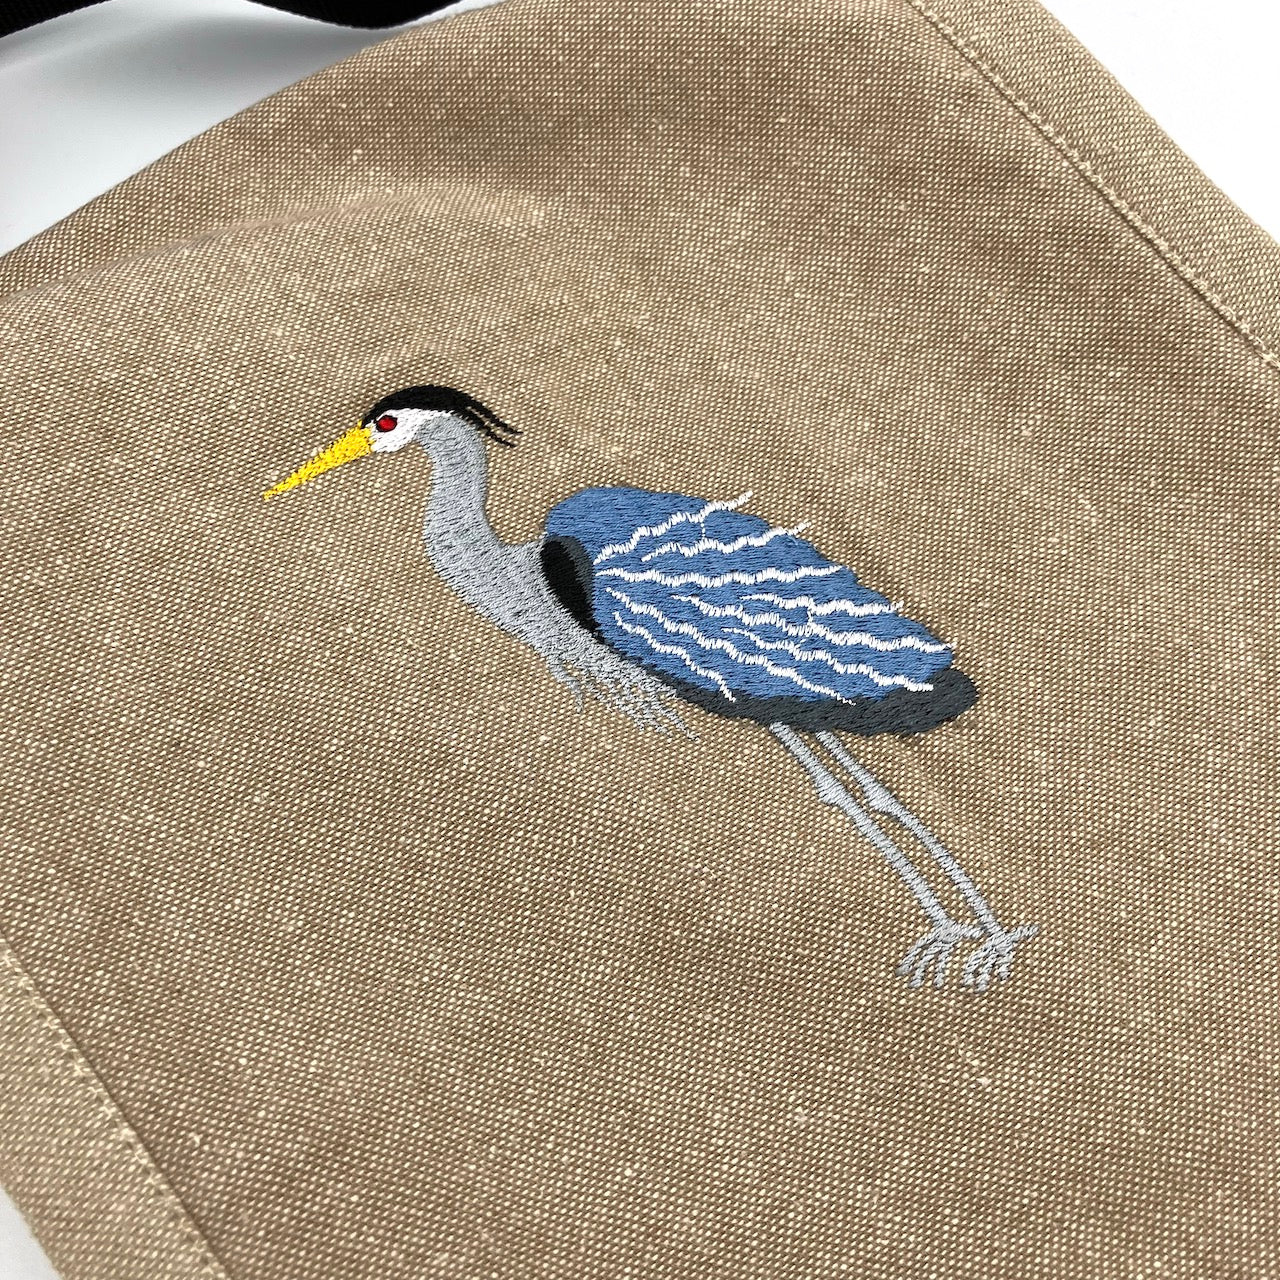 Great Blue Heron Field Bag